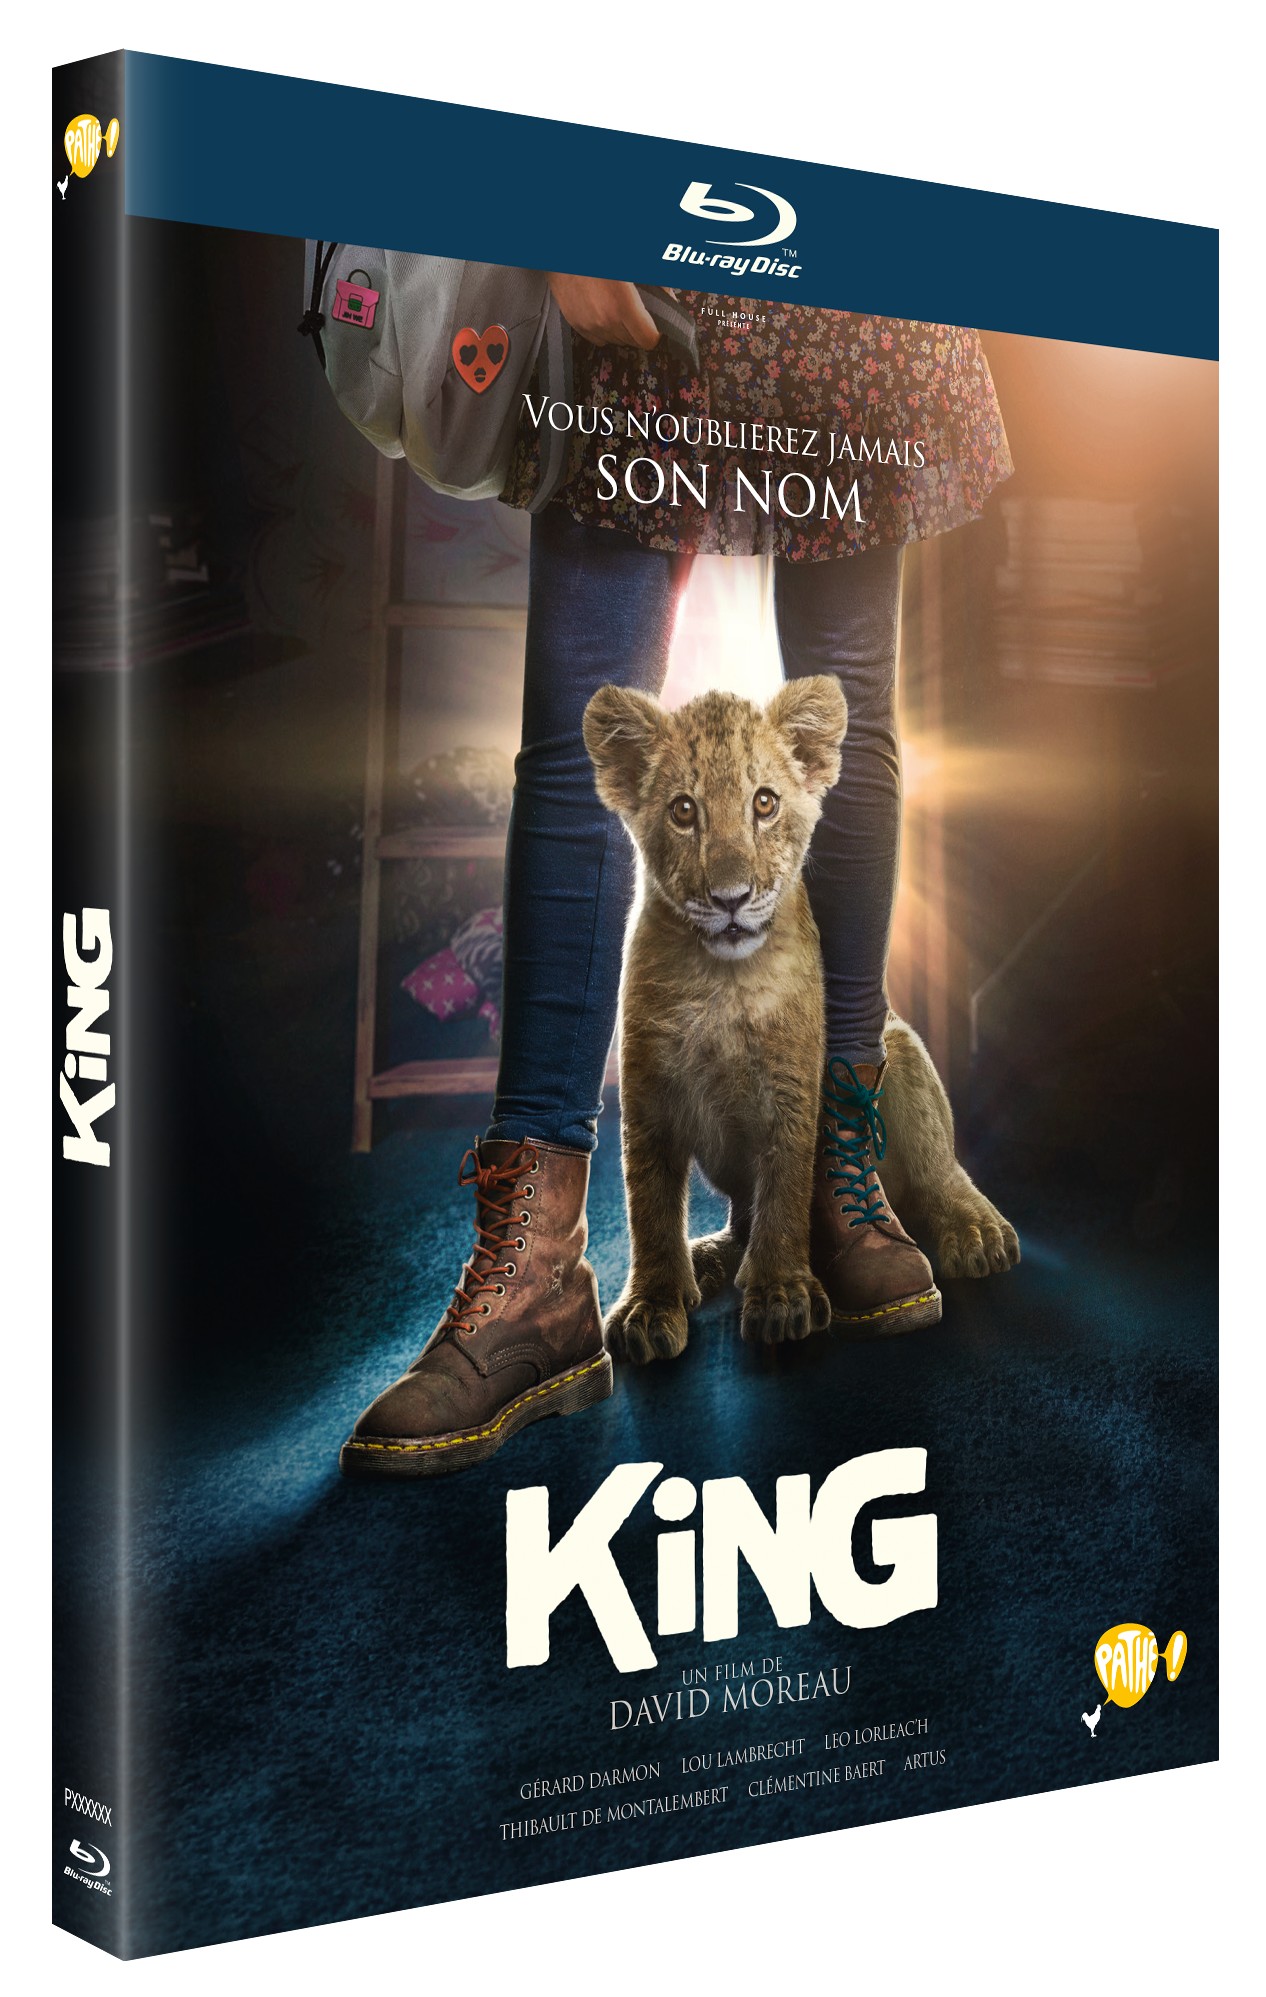 KING - DVD